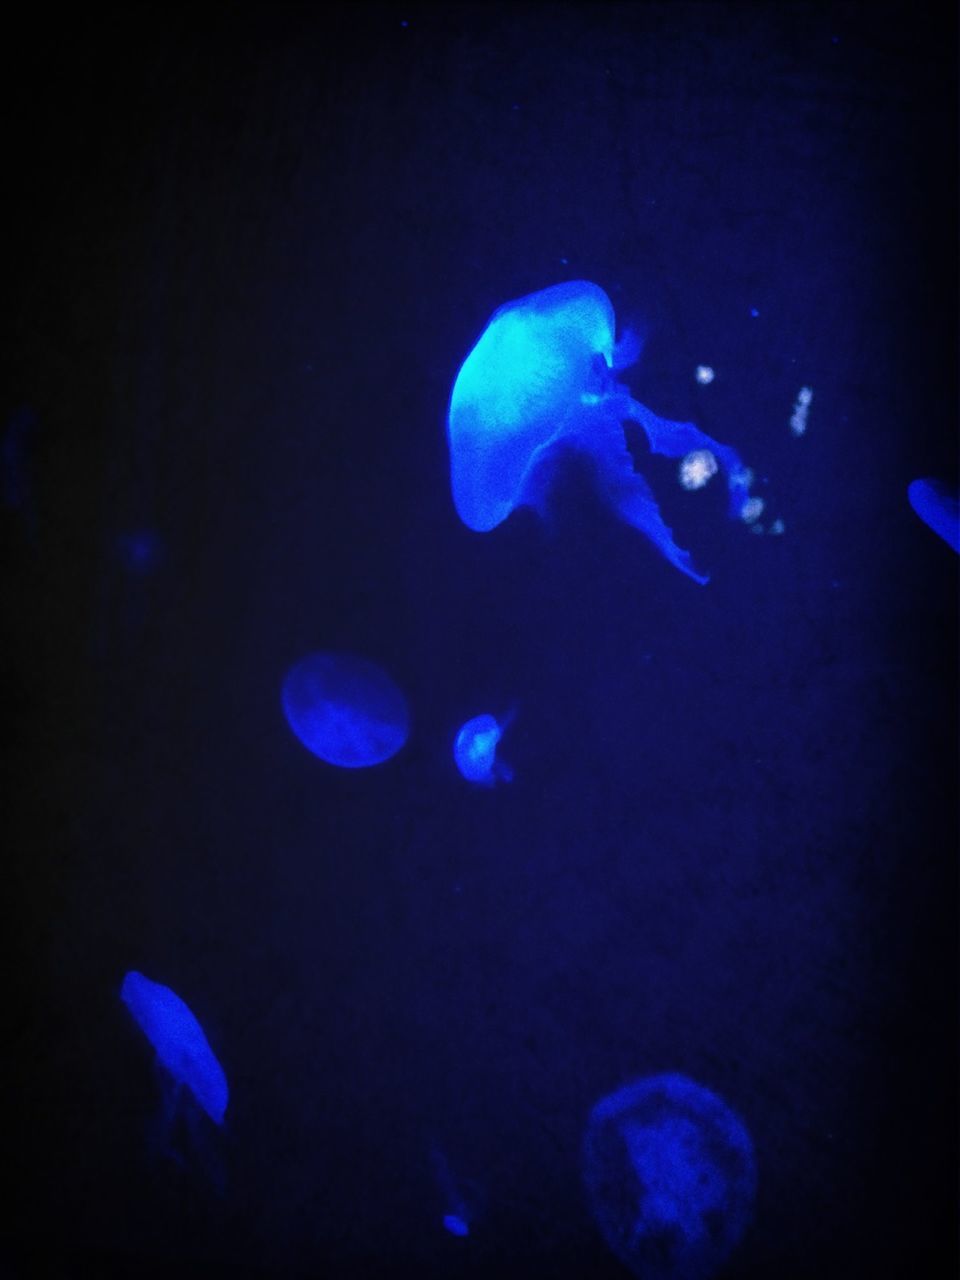 Glowing blue jellyfish swimming underwater